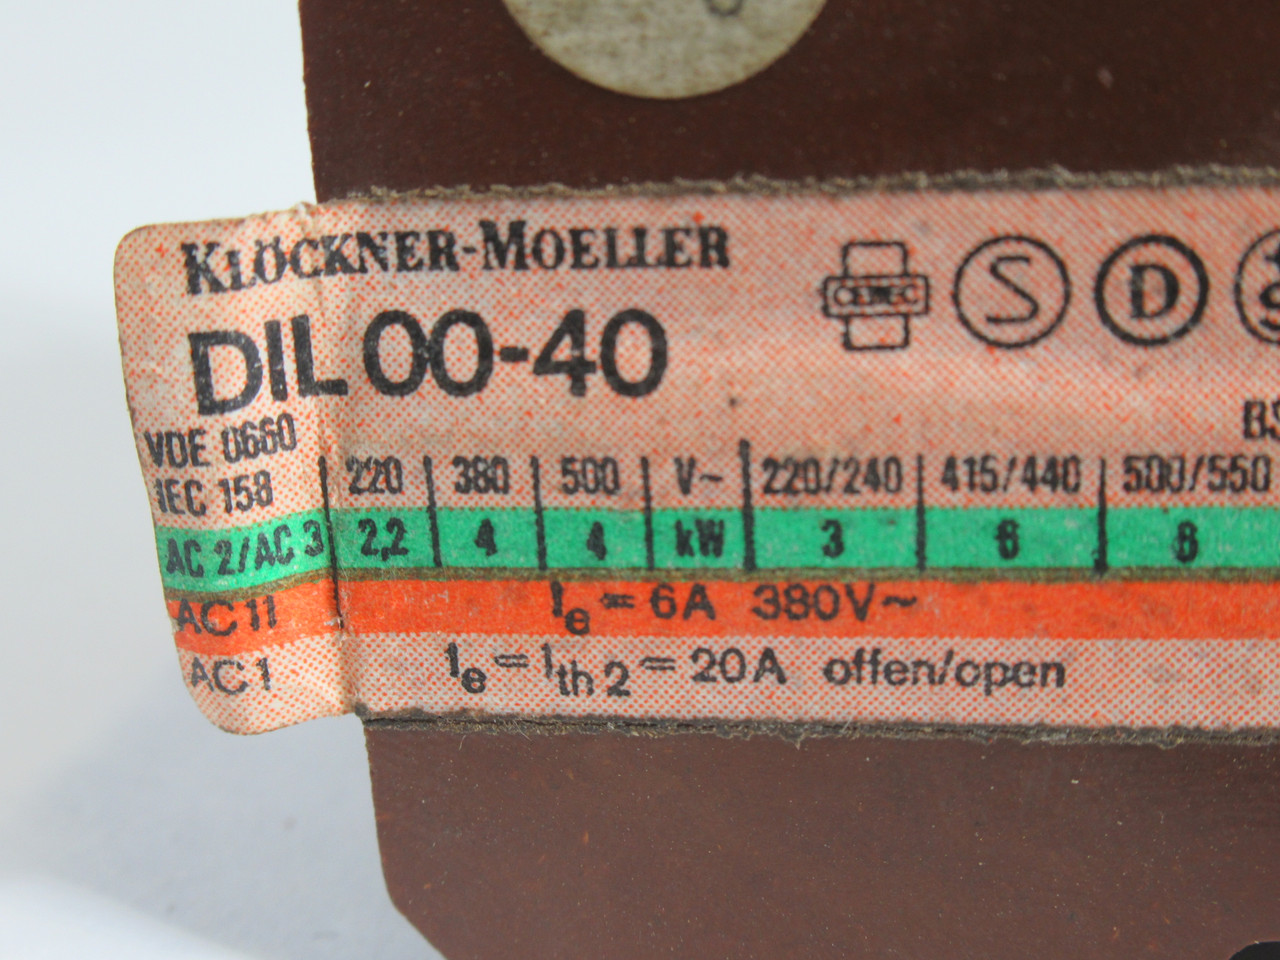 Klockner-Moeller DIL00-40 Contactor 110V 20A 60Hz USED